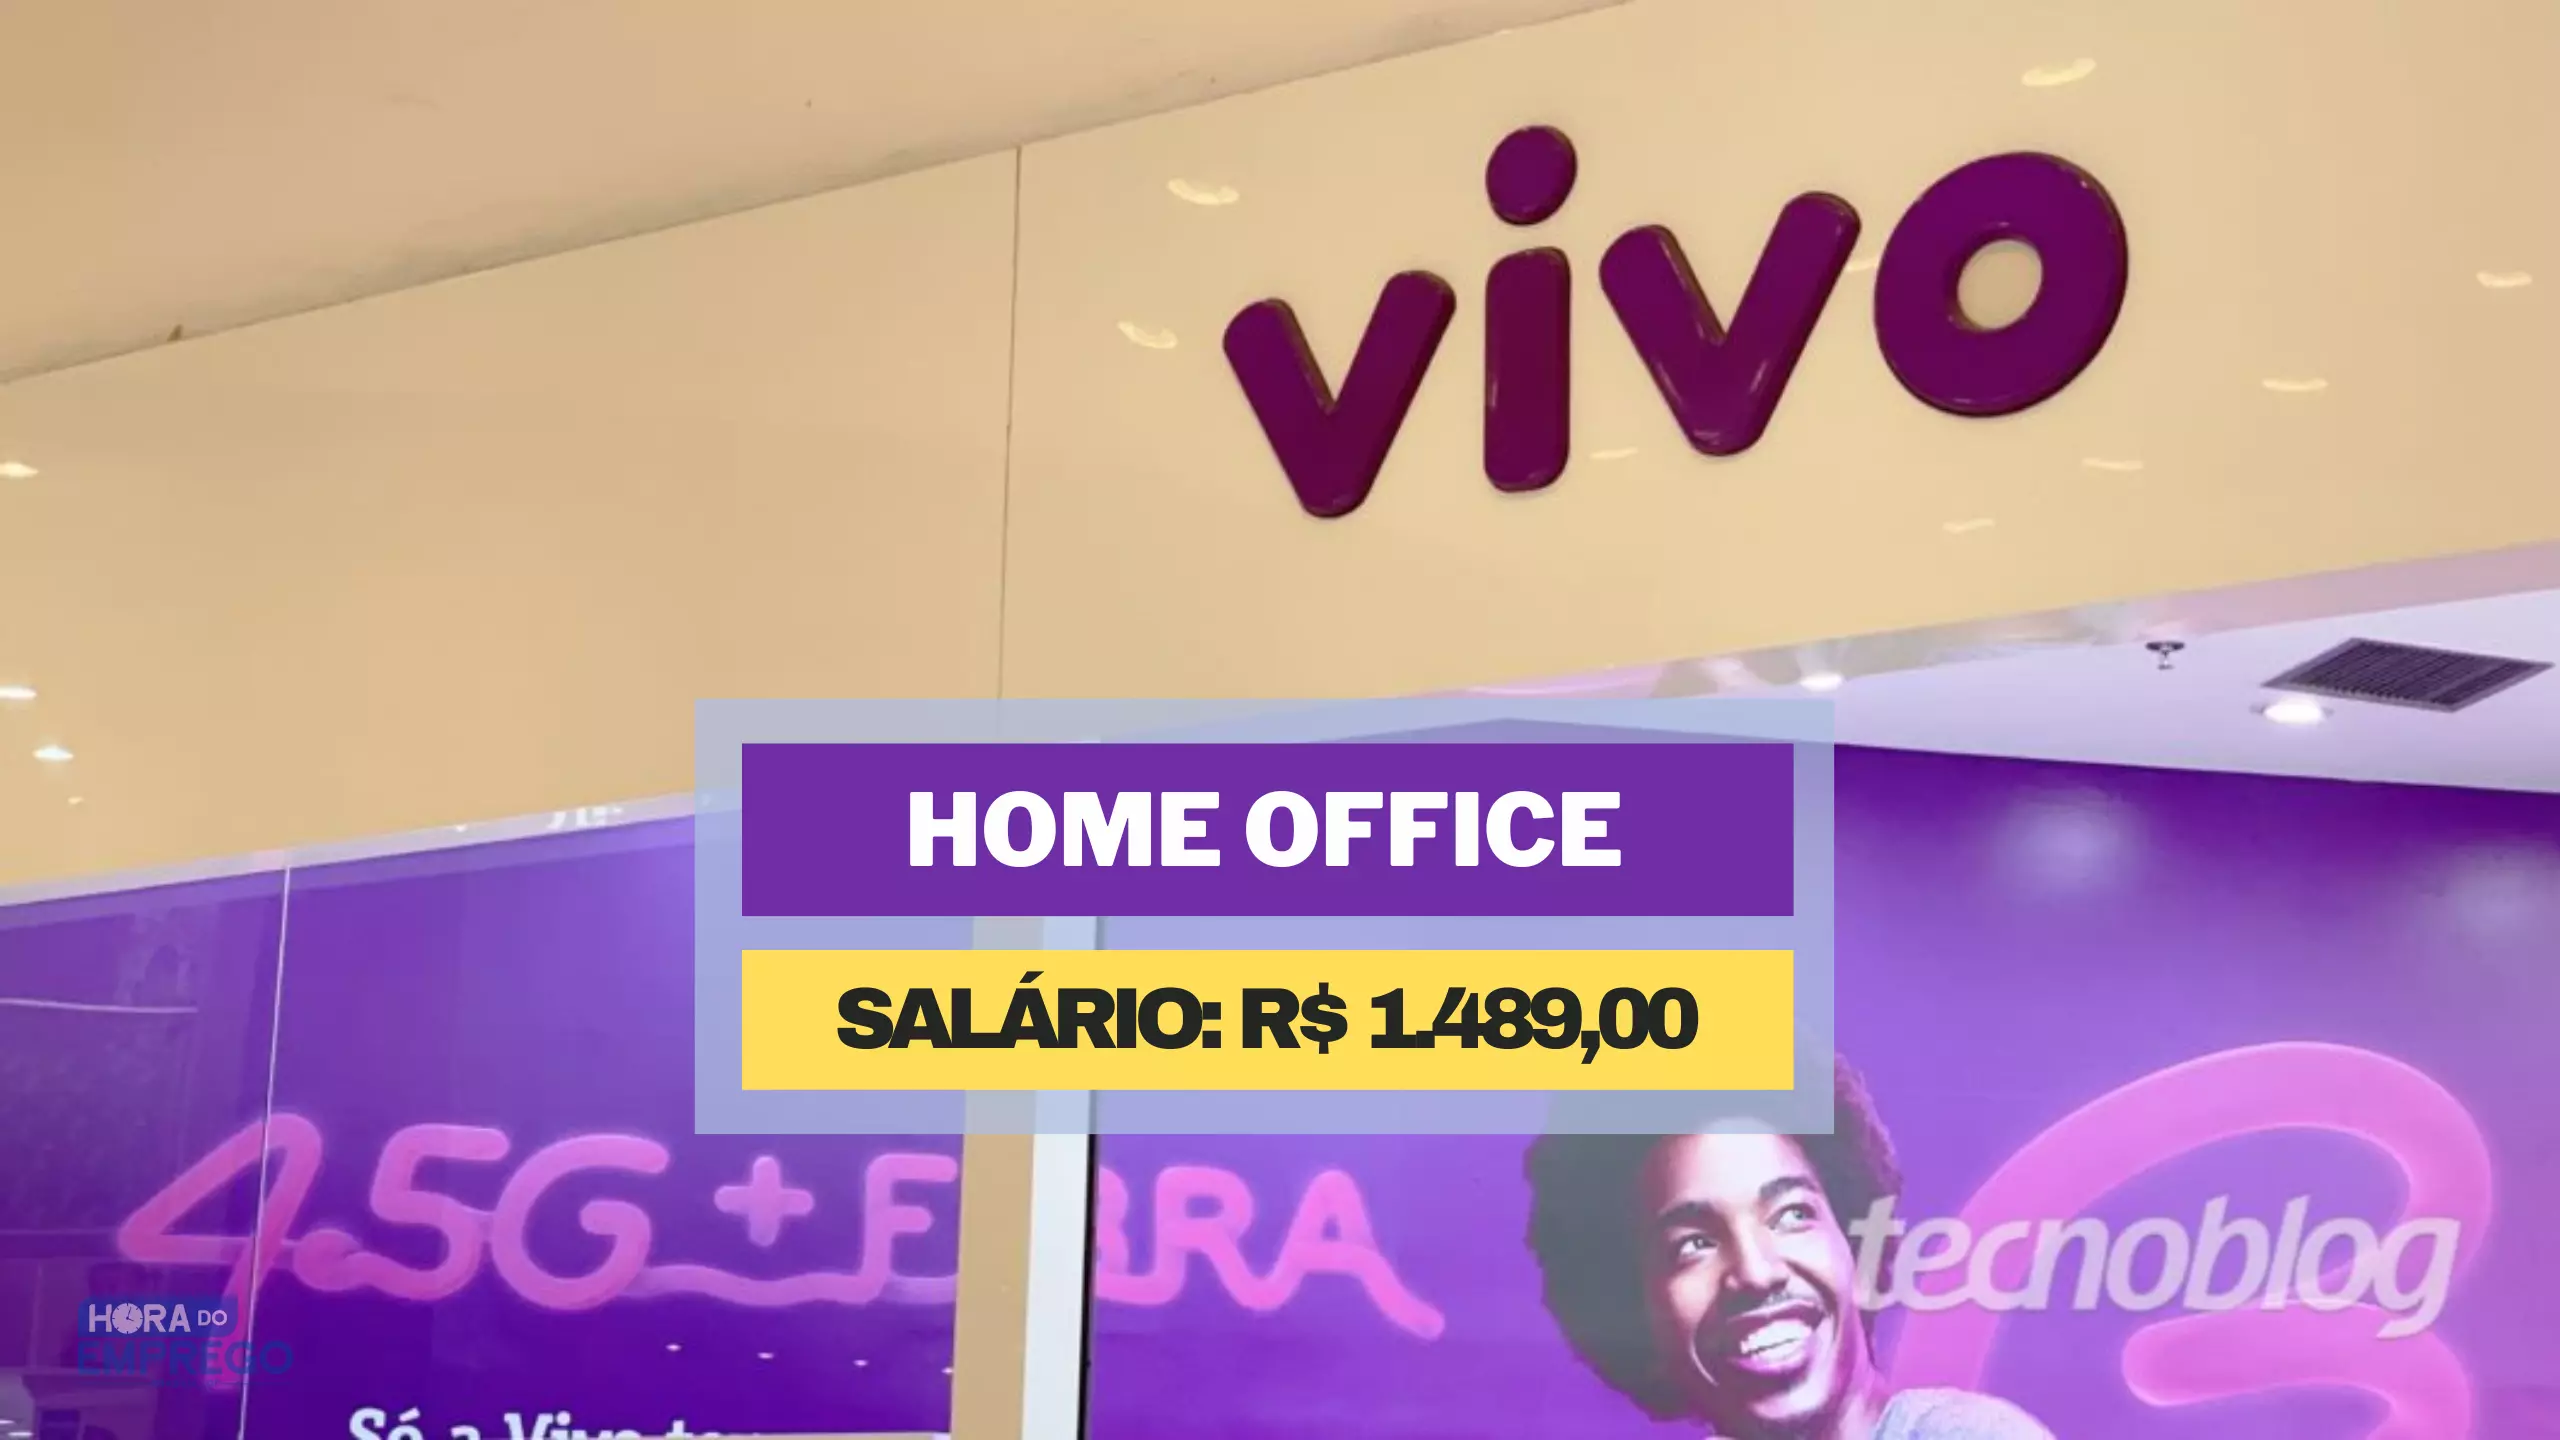 Operadora VIVO abriu vaga HOME OFFICE para trabalhar de casa com salario de R$1.489 no setor de Atendimento